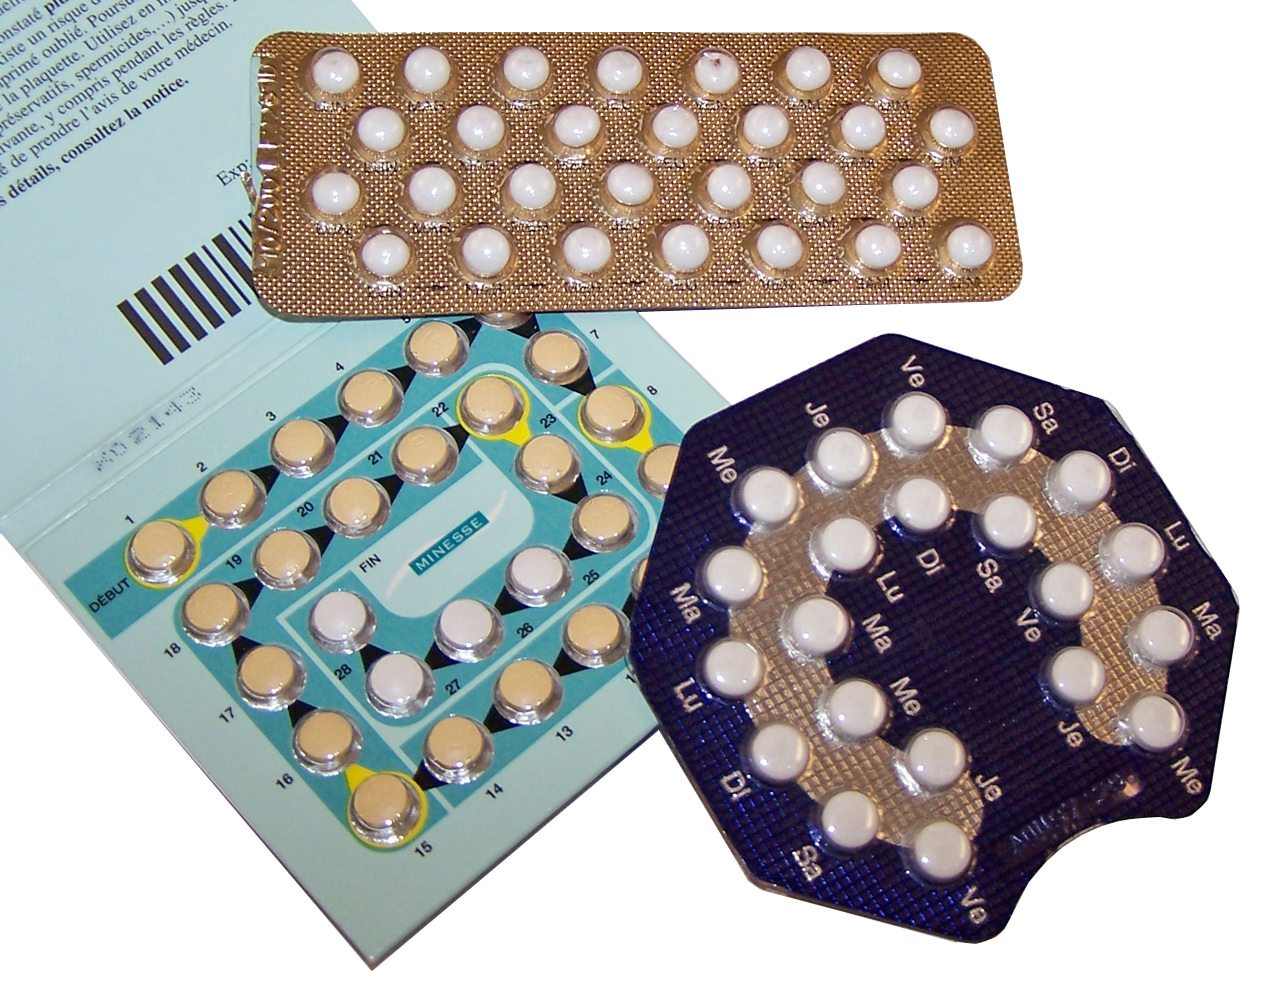 Pillola contraccettiva non più rimborsabile. Assurdo ma vero